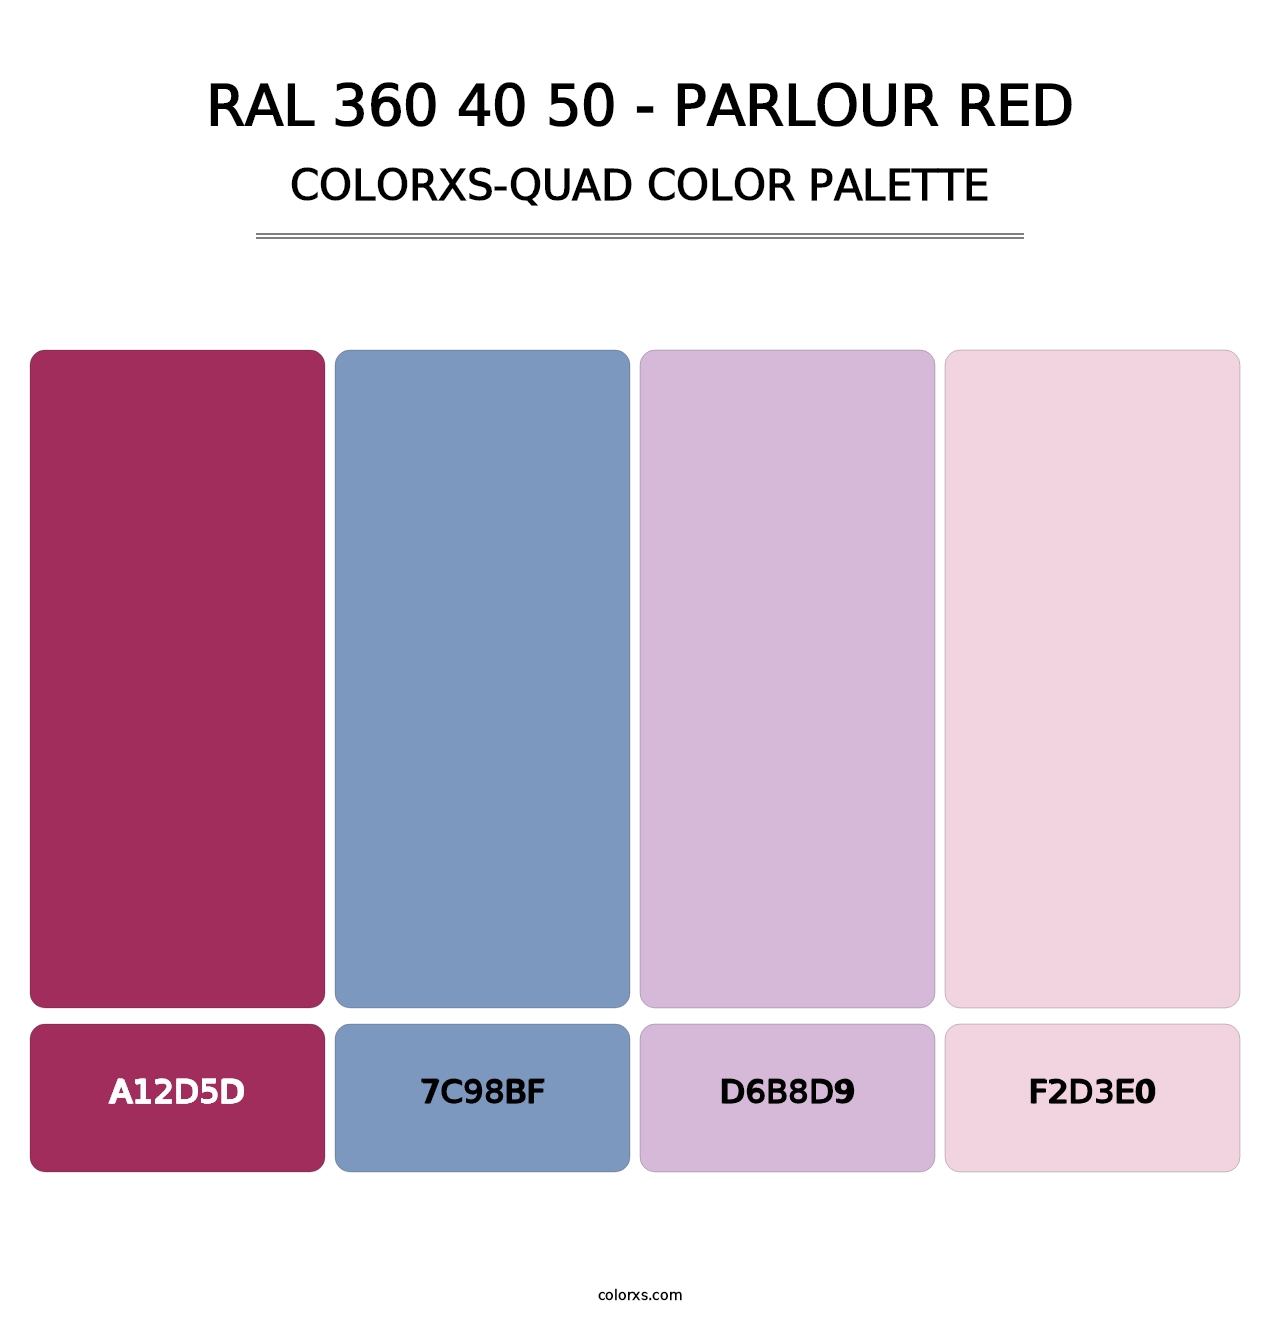 RAL 360 40 50 - Parlour Red - Colorxs Quad Palette